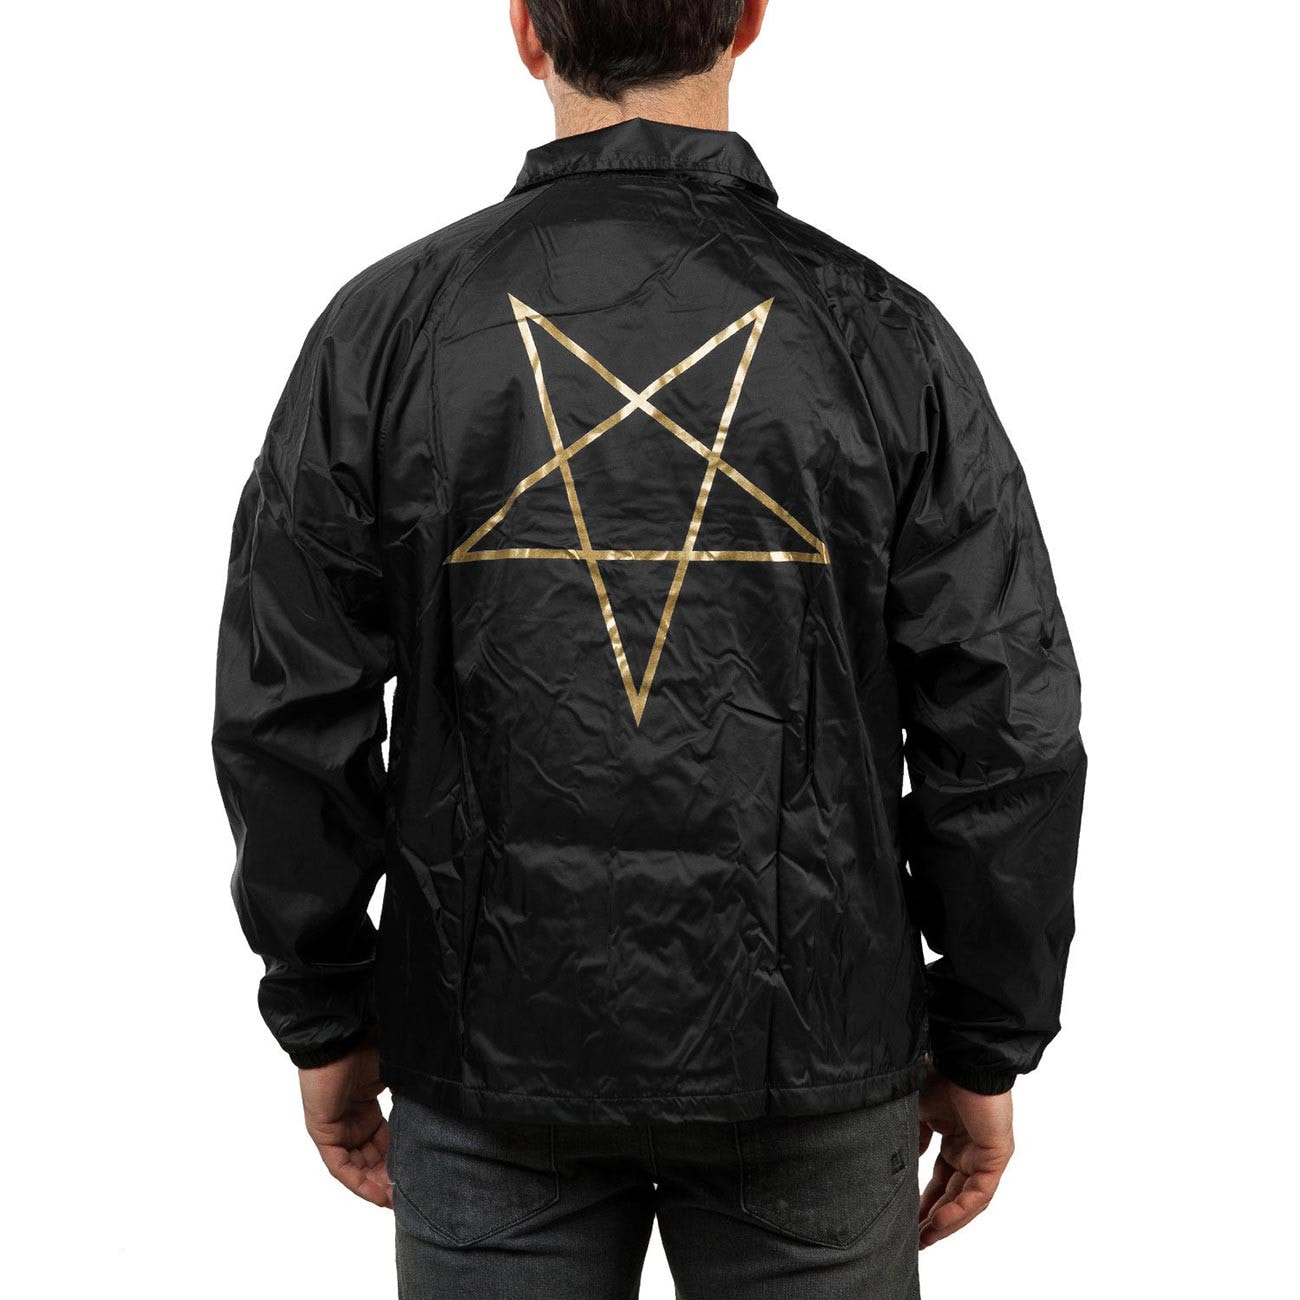 Techwear HOJ-93C-S, Size S Black Hallmark Jacket with ESD grid-knit cuffs